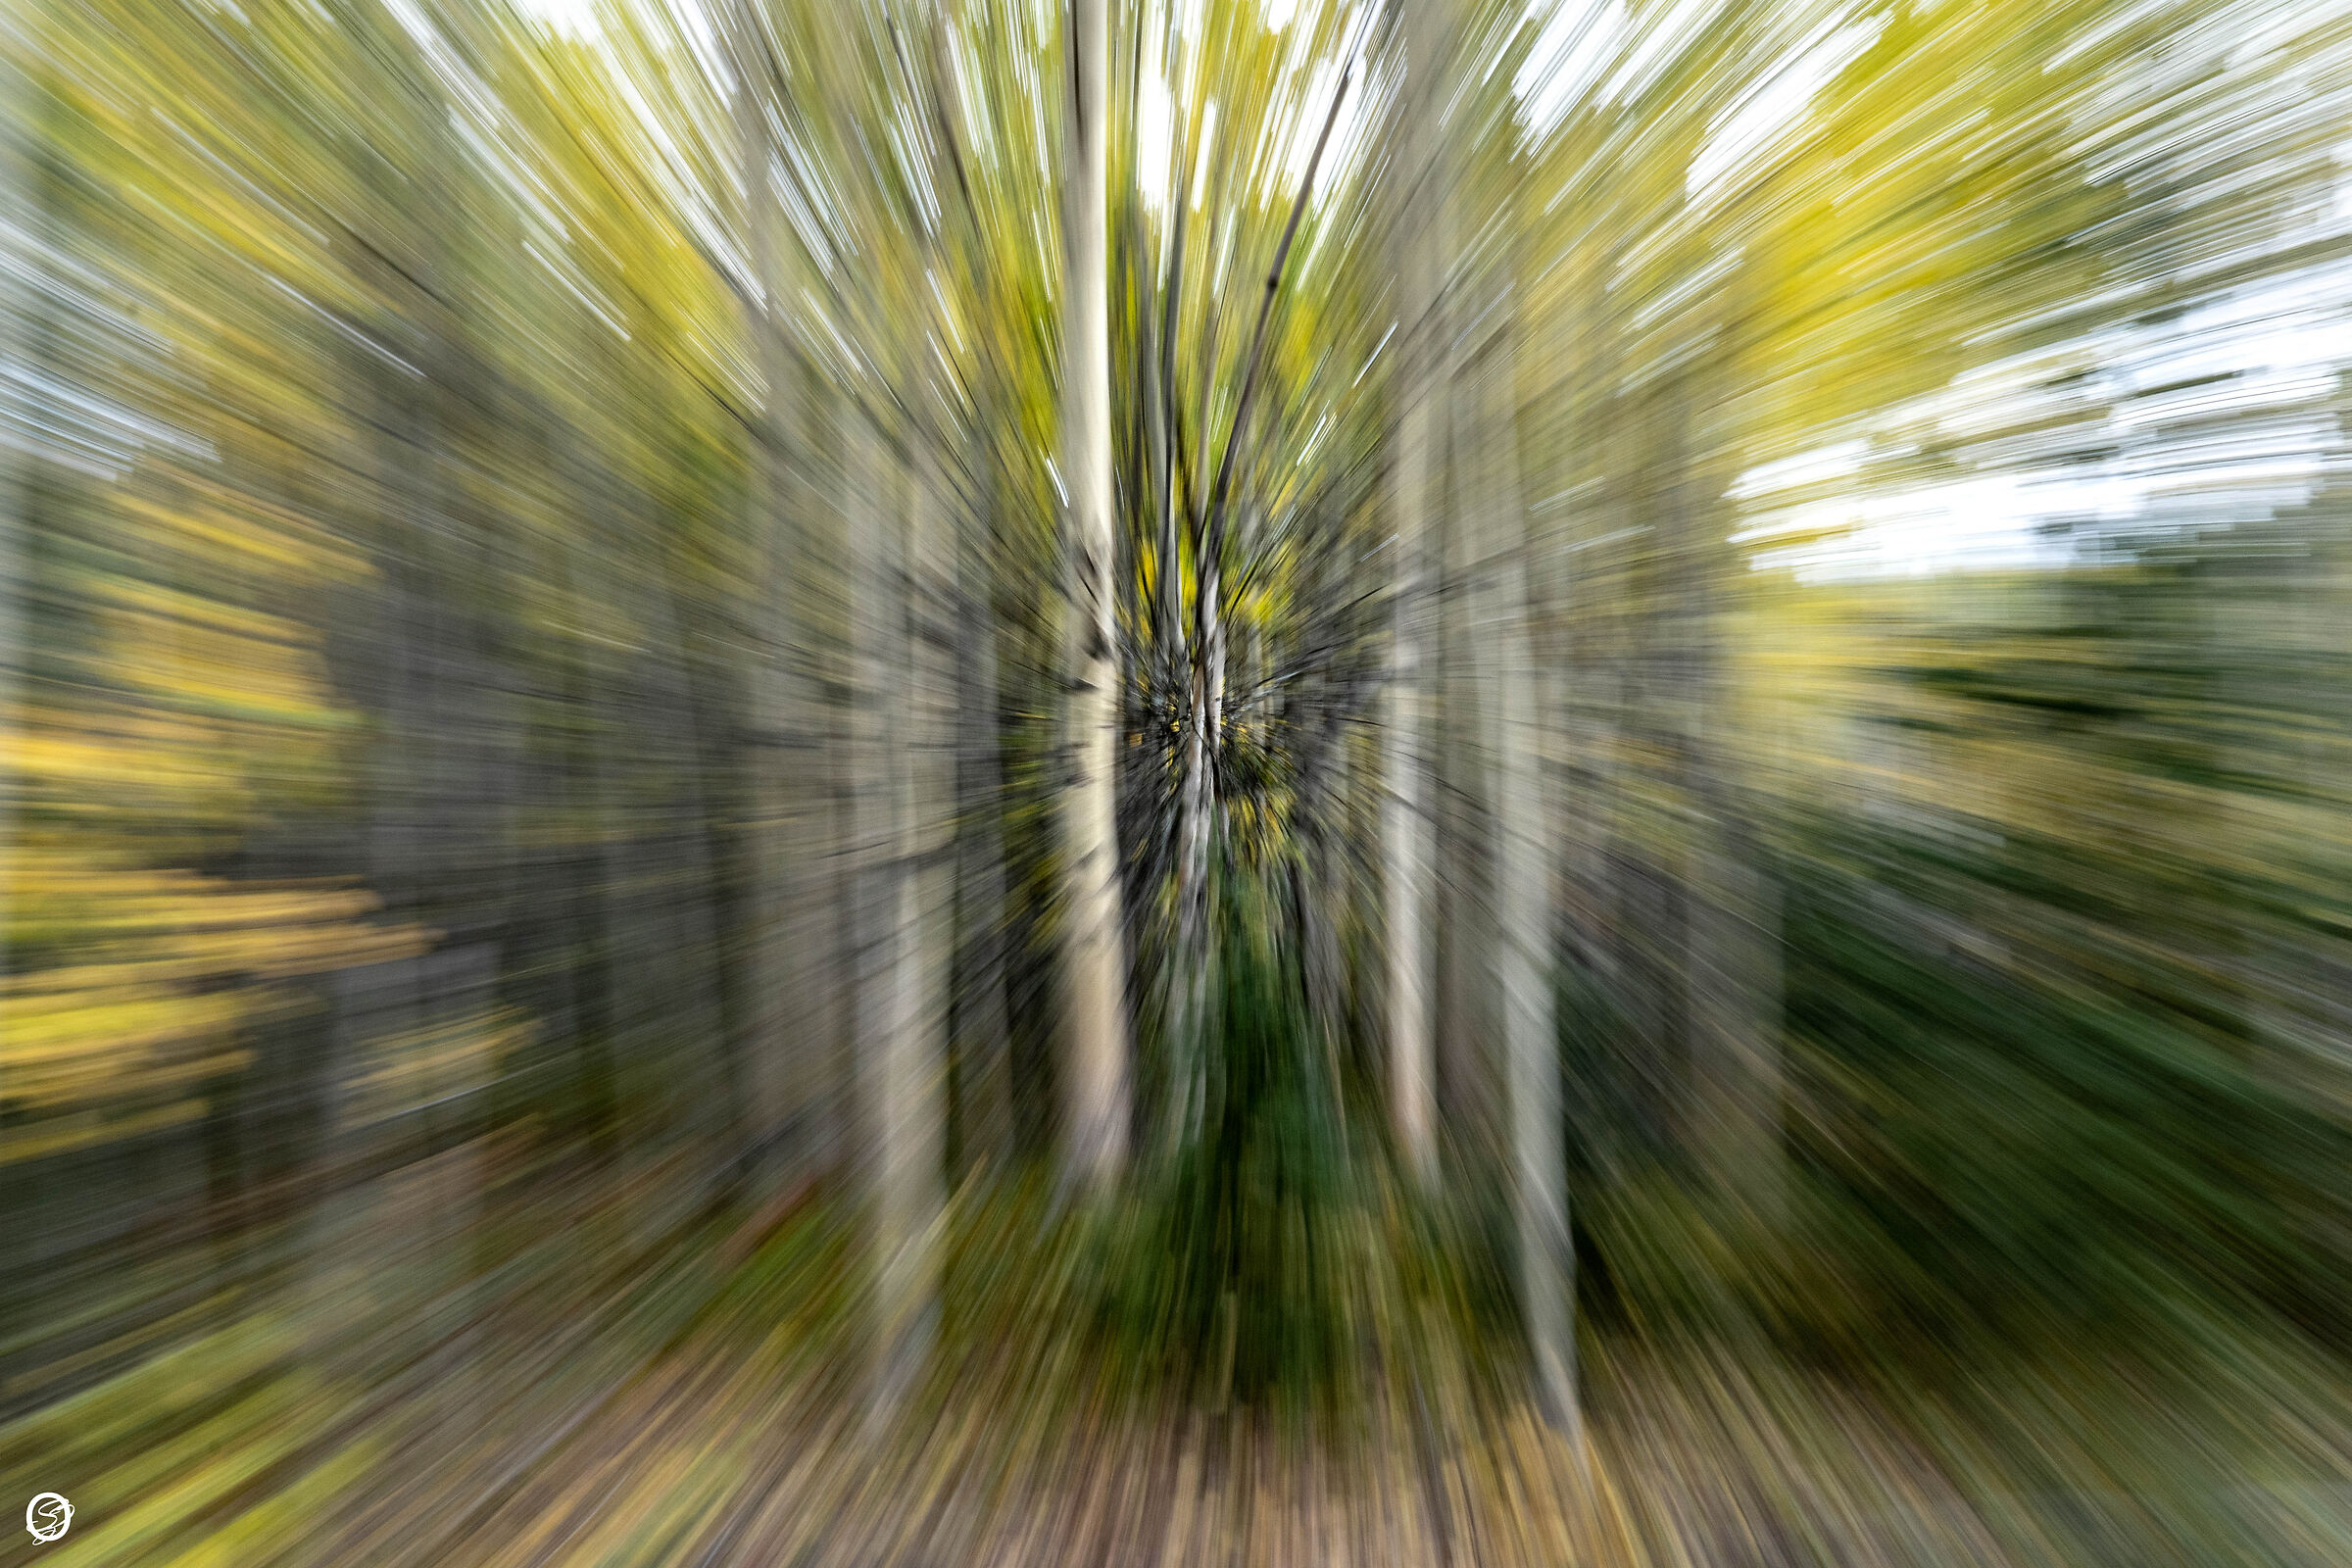 Running through the woods...